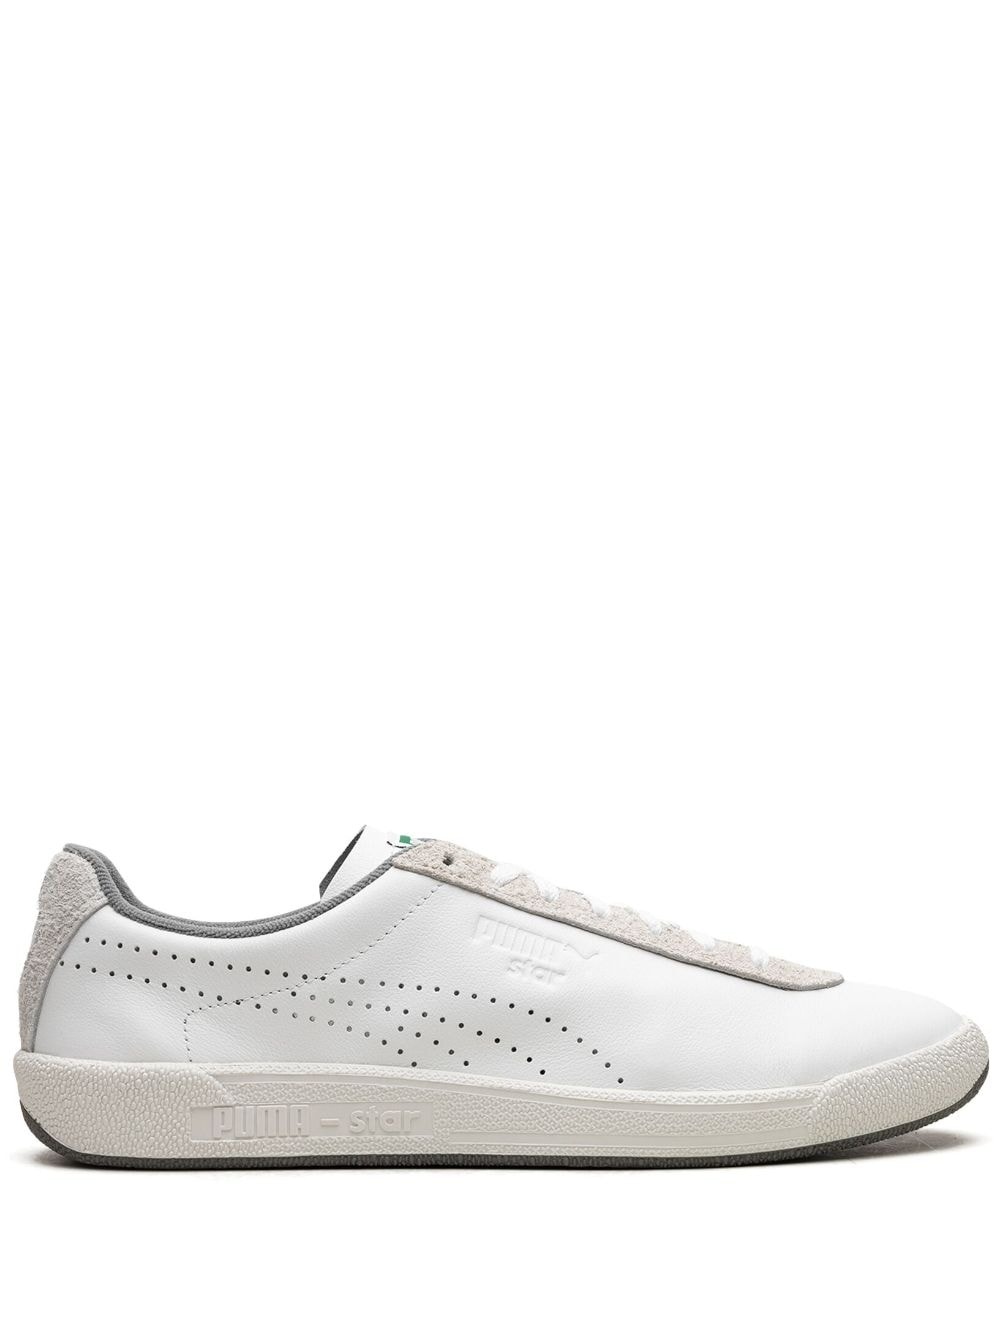 Star OG "White/Vapor Gray" sneakers - 1